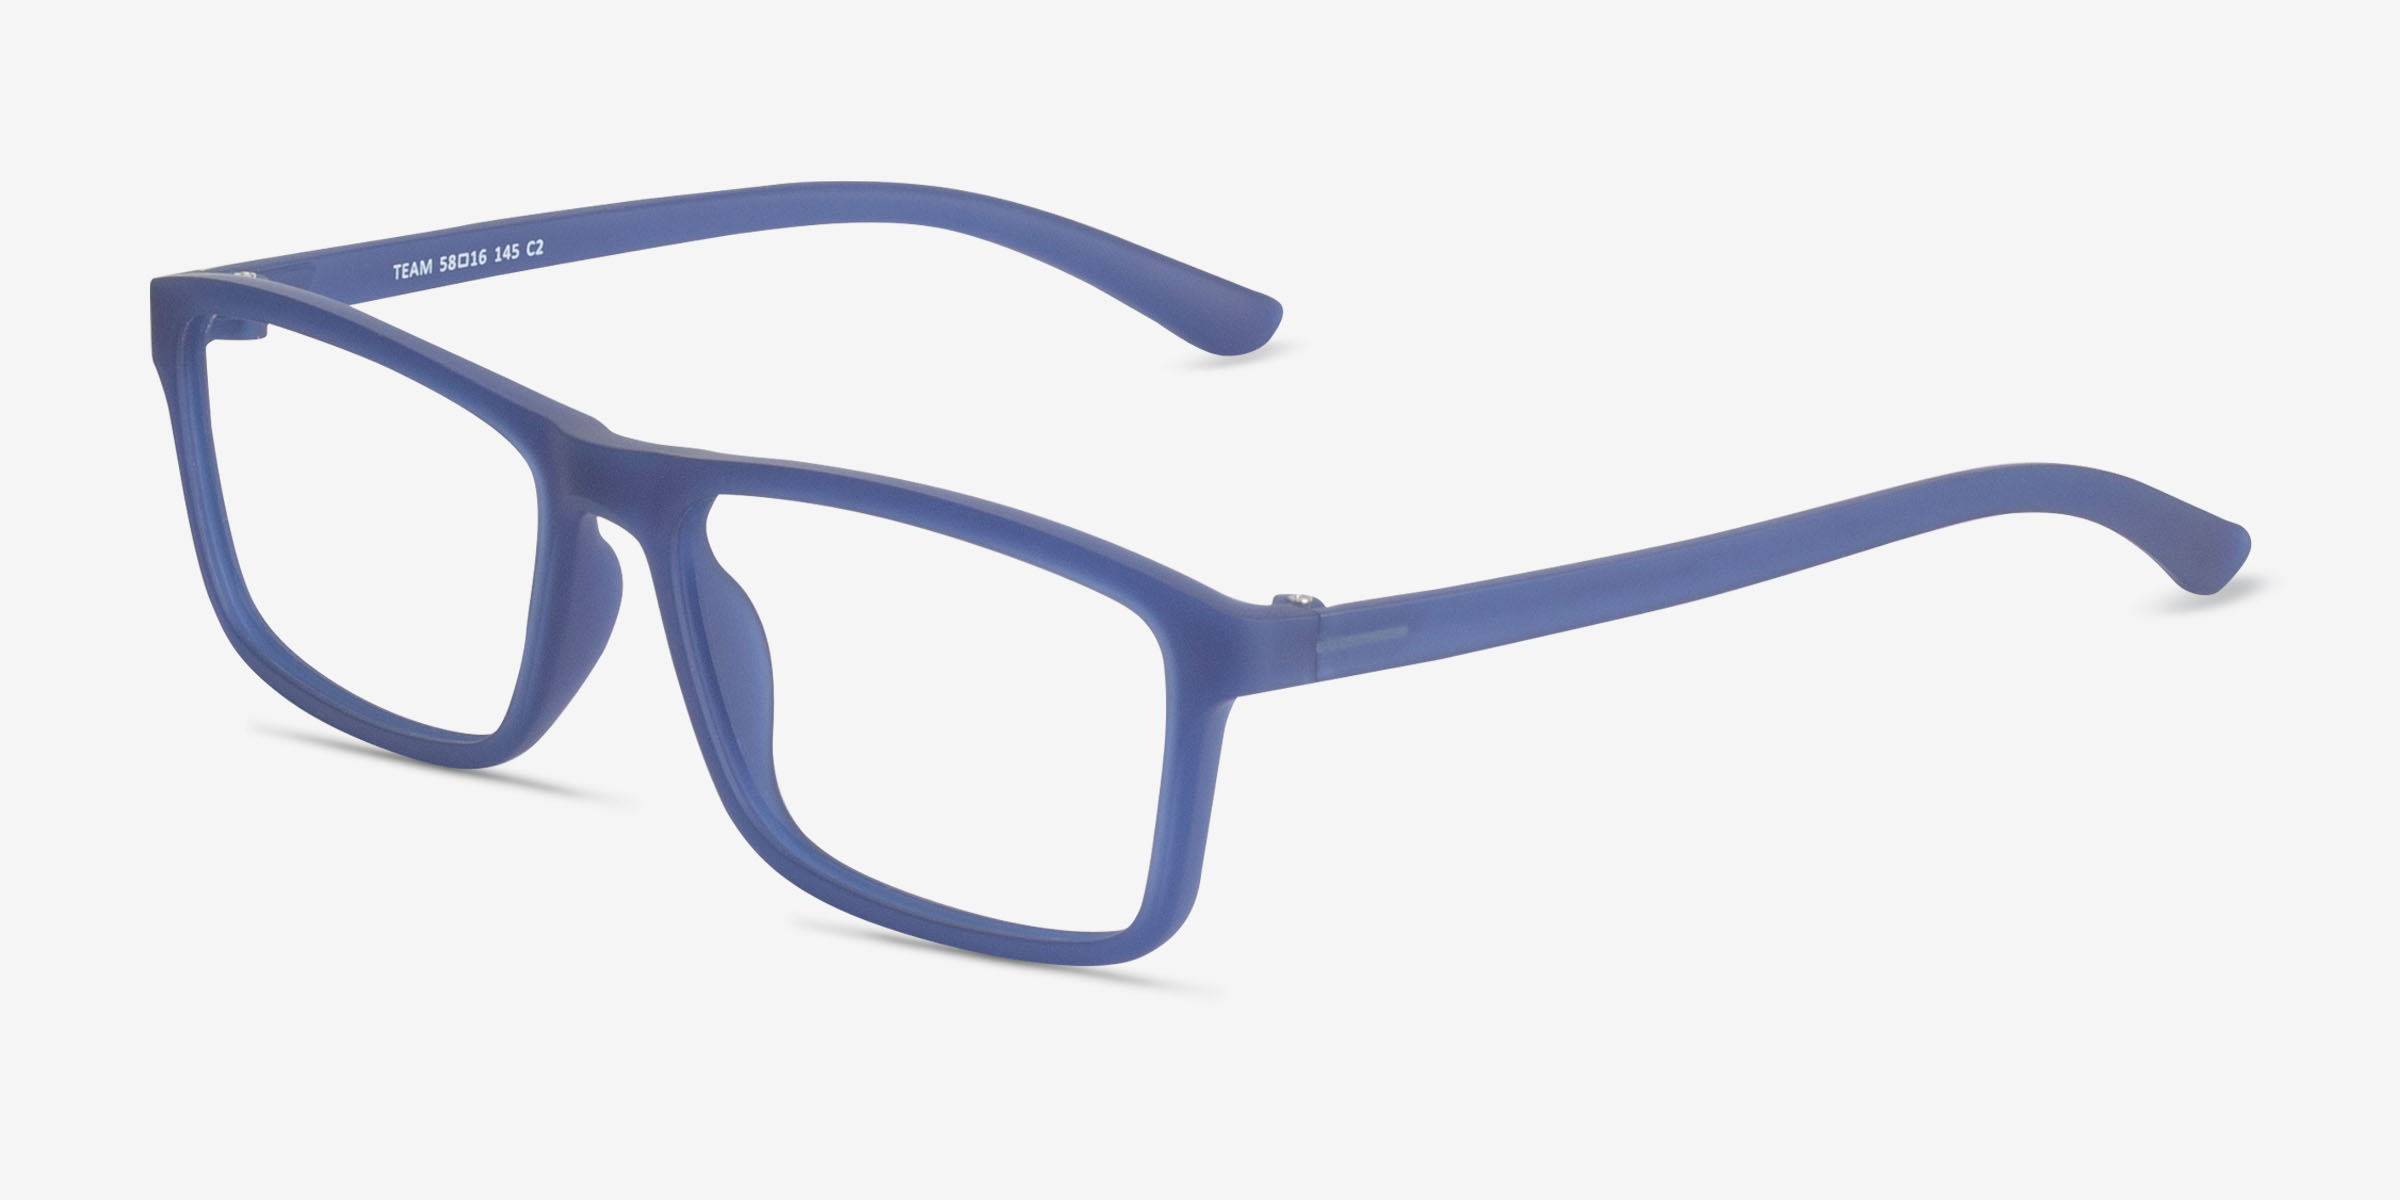 Team Rectangle Matte Blue Full Rim Eyeglasses | Eyebuydirect